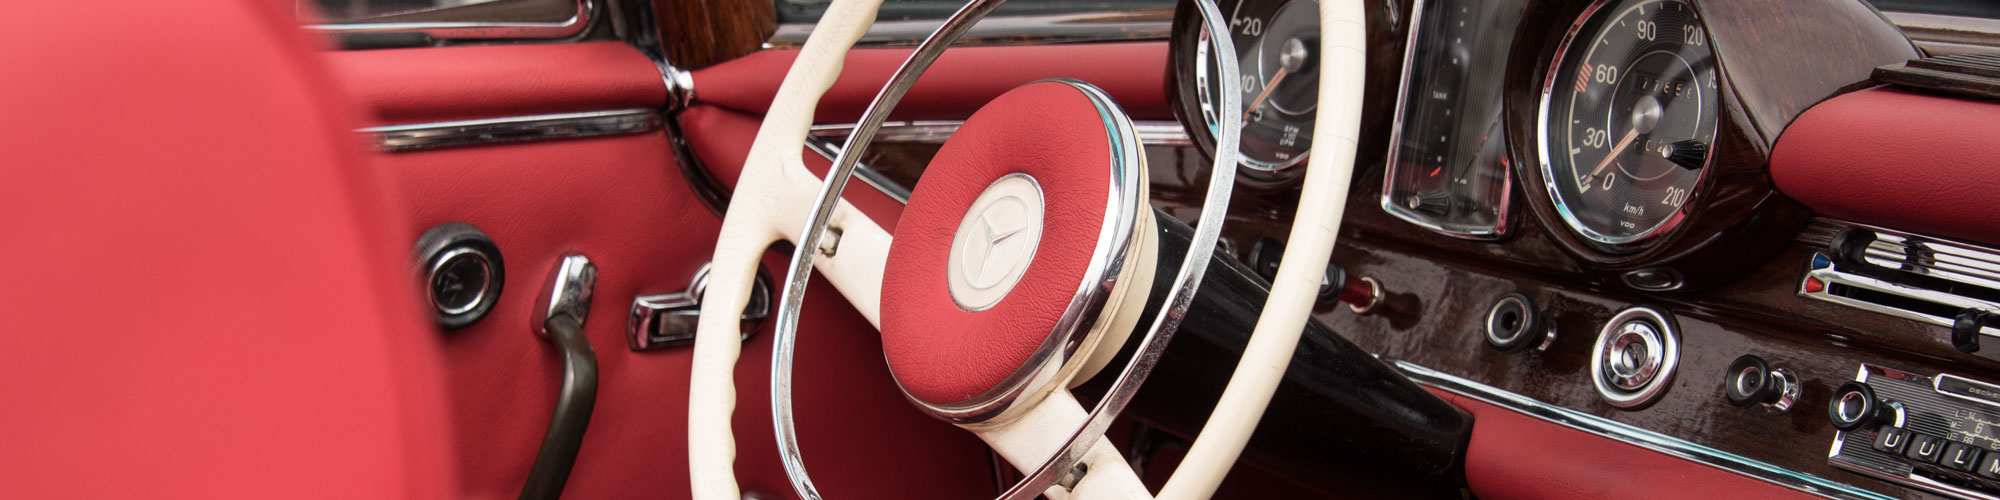 Innenausstattung in rotem Leder bei einem Mercedes Oldtimer